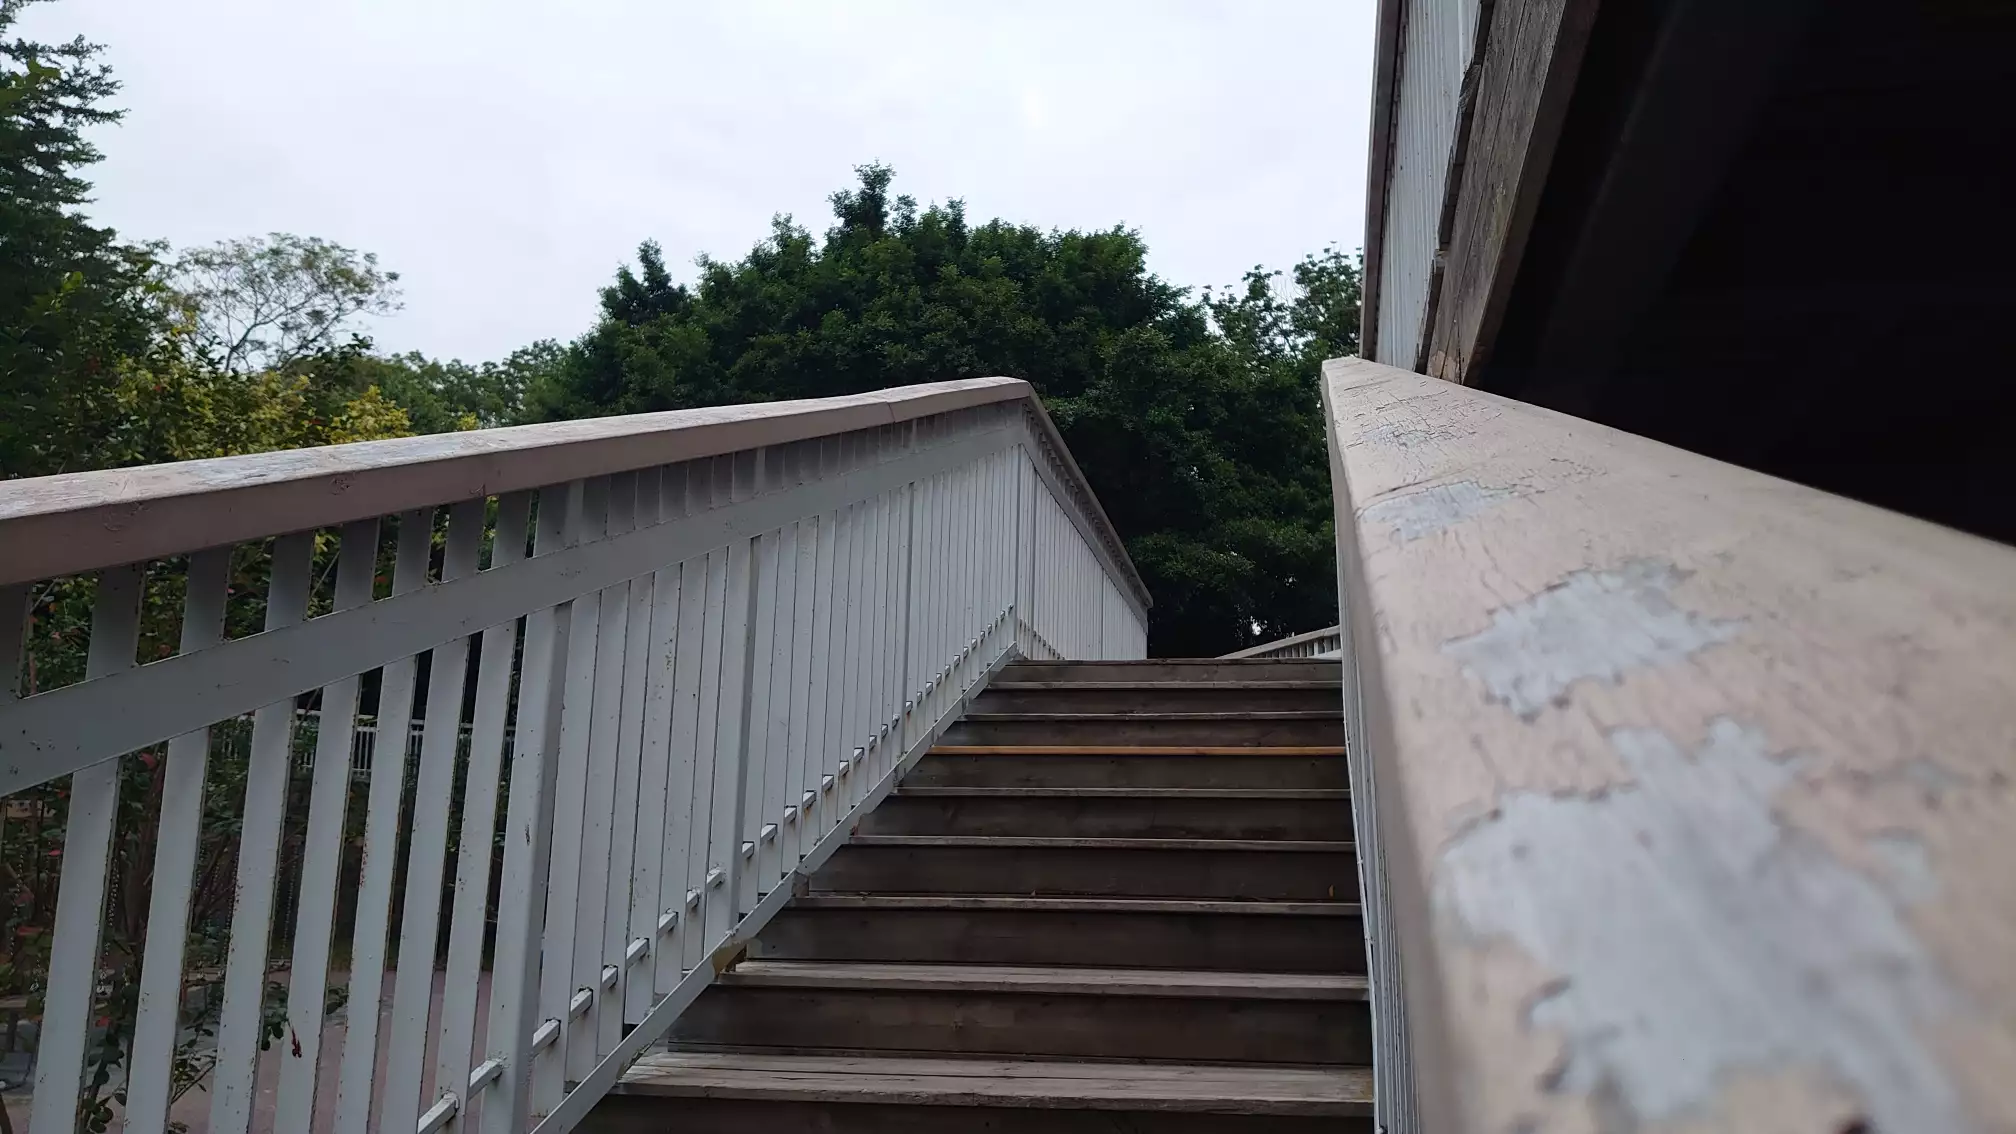 在步行梯扶手处对着天空斜上方拍了一张图片，可以看到步行梯的扶手和台阶地板是木头做的，栏杆则是刷了白漆的铁栏杆